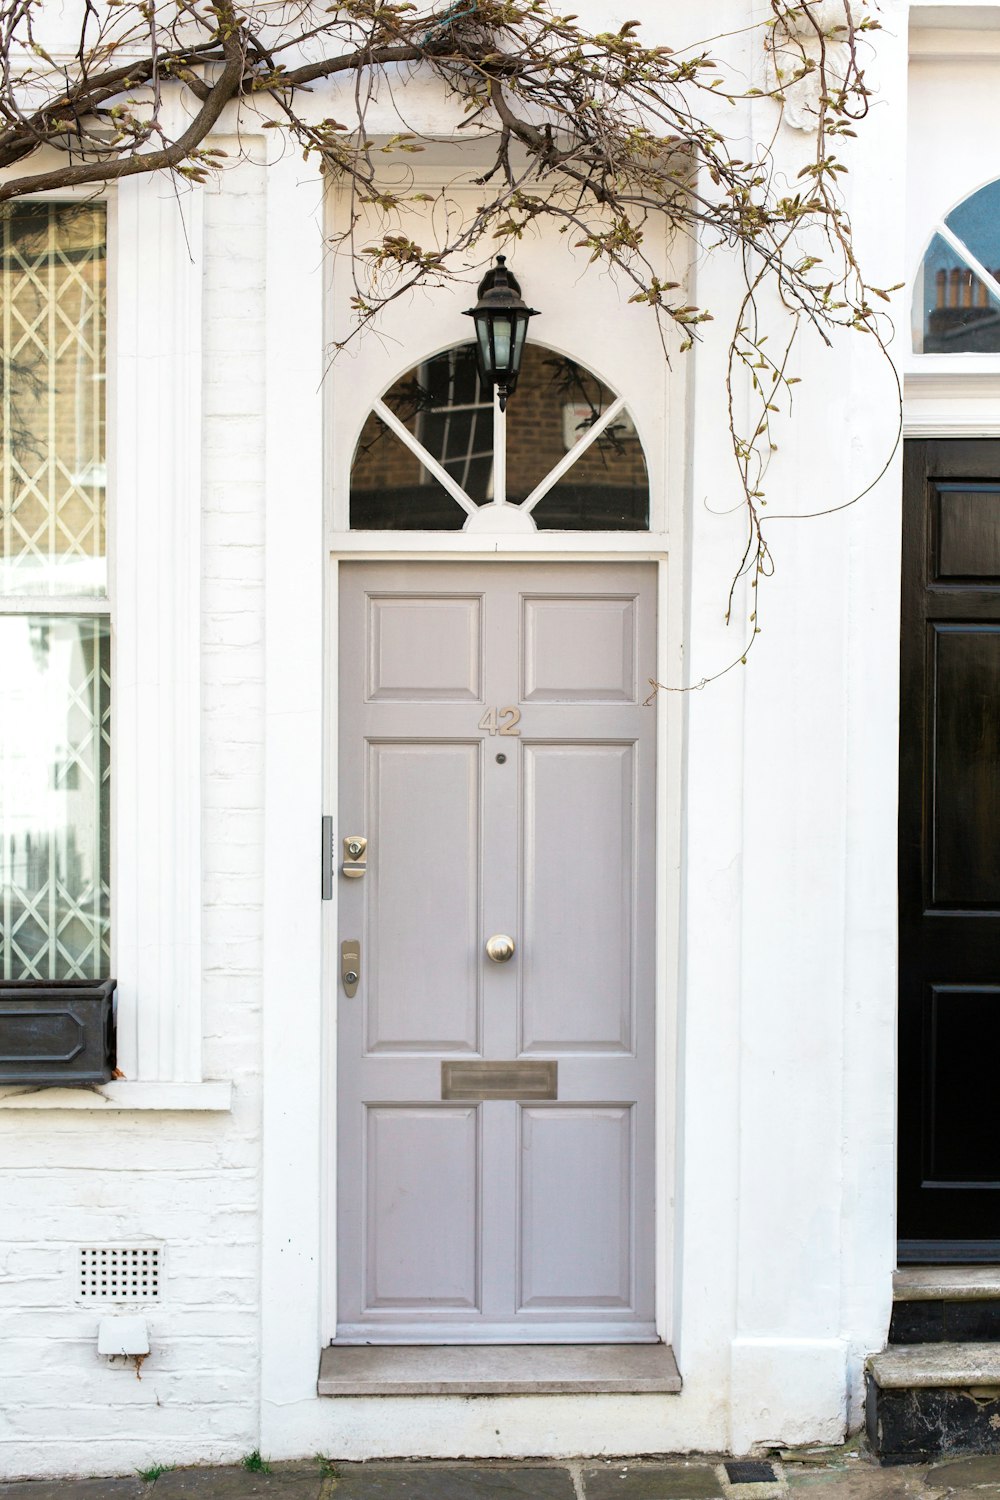 Foto dos puertas juntas durante el día – Imagen Londres gratis en Unsplash